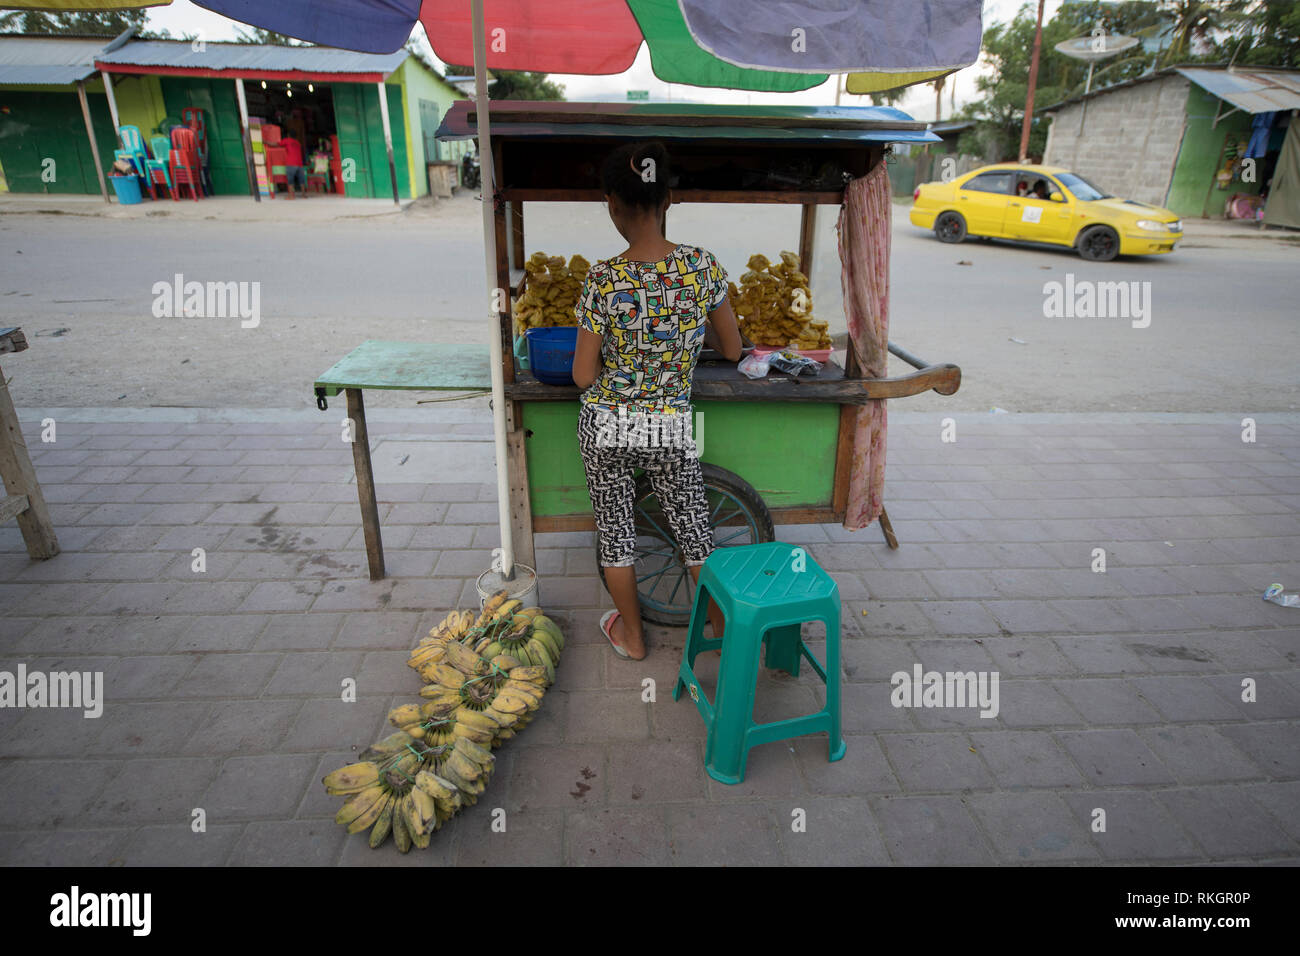 Food seller, Woman selling banana fritter snacks, Dili, East Timor Stock Photo